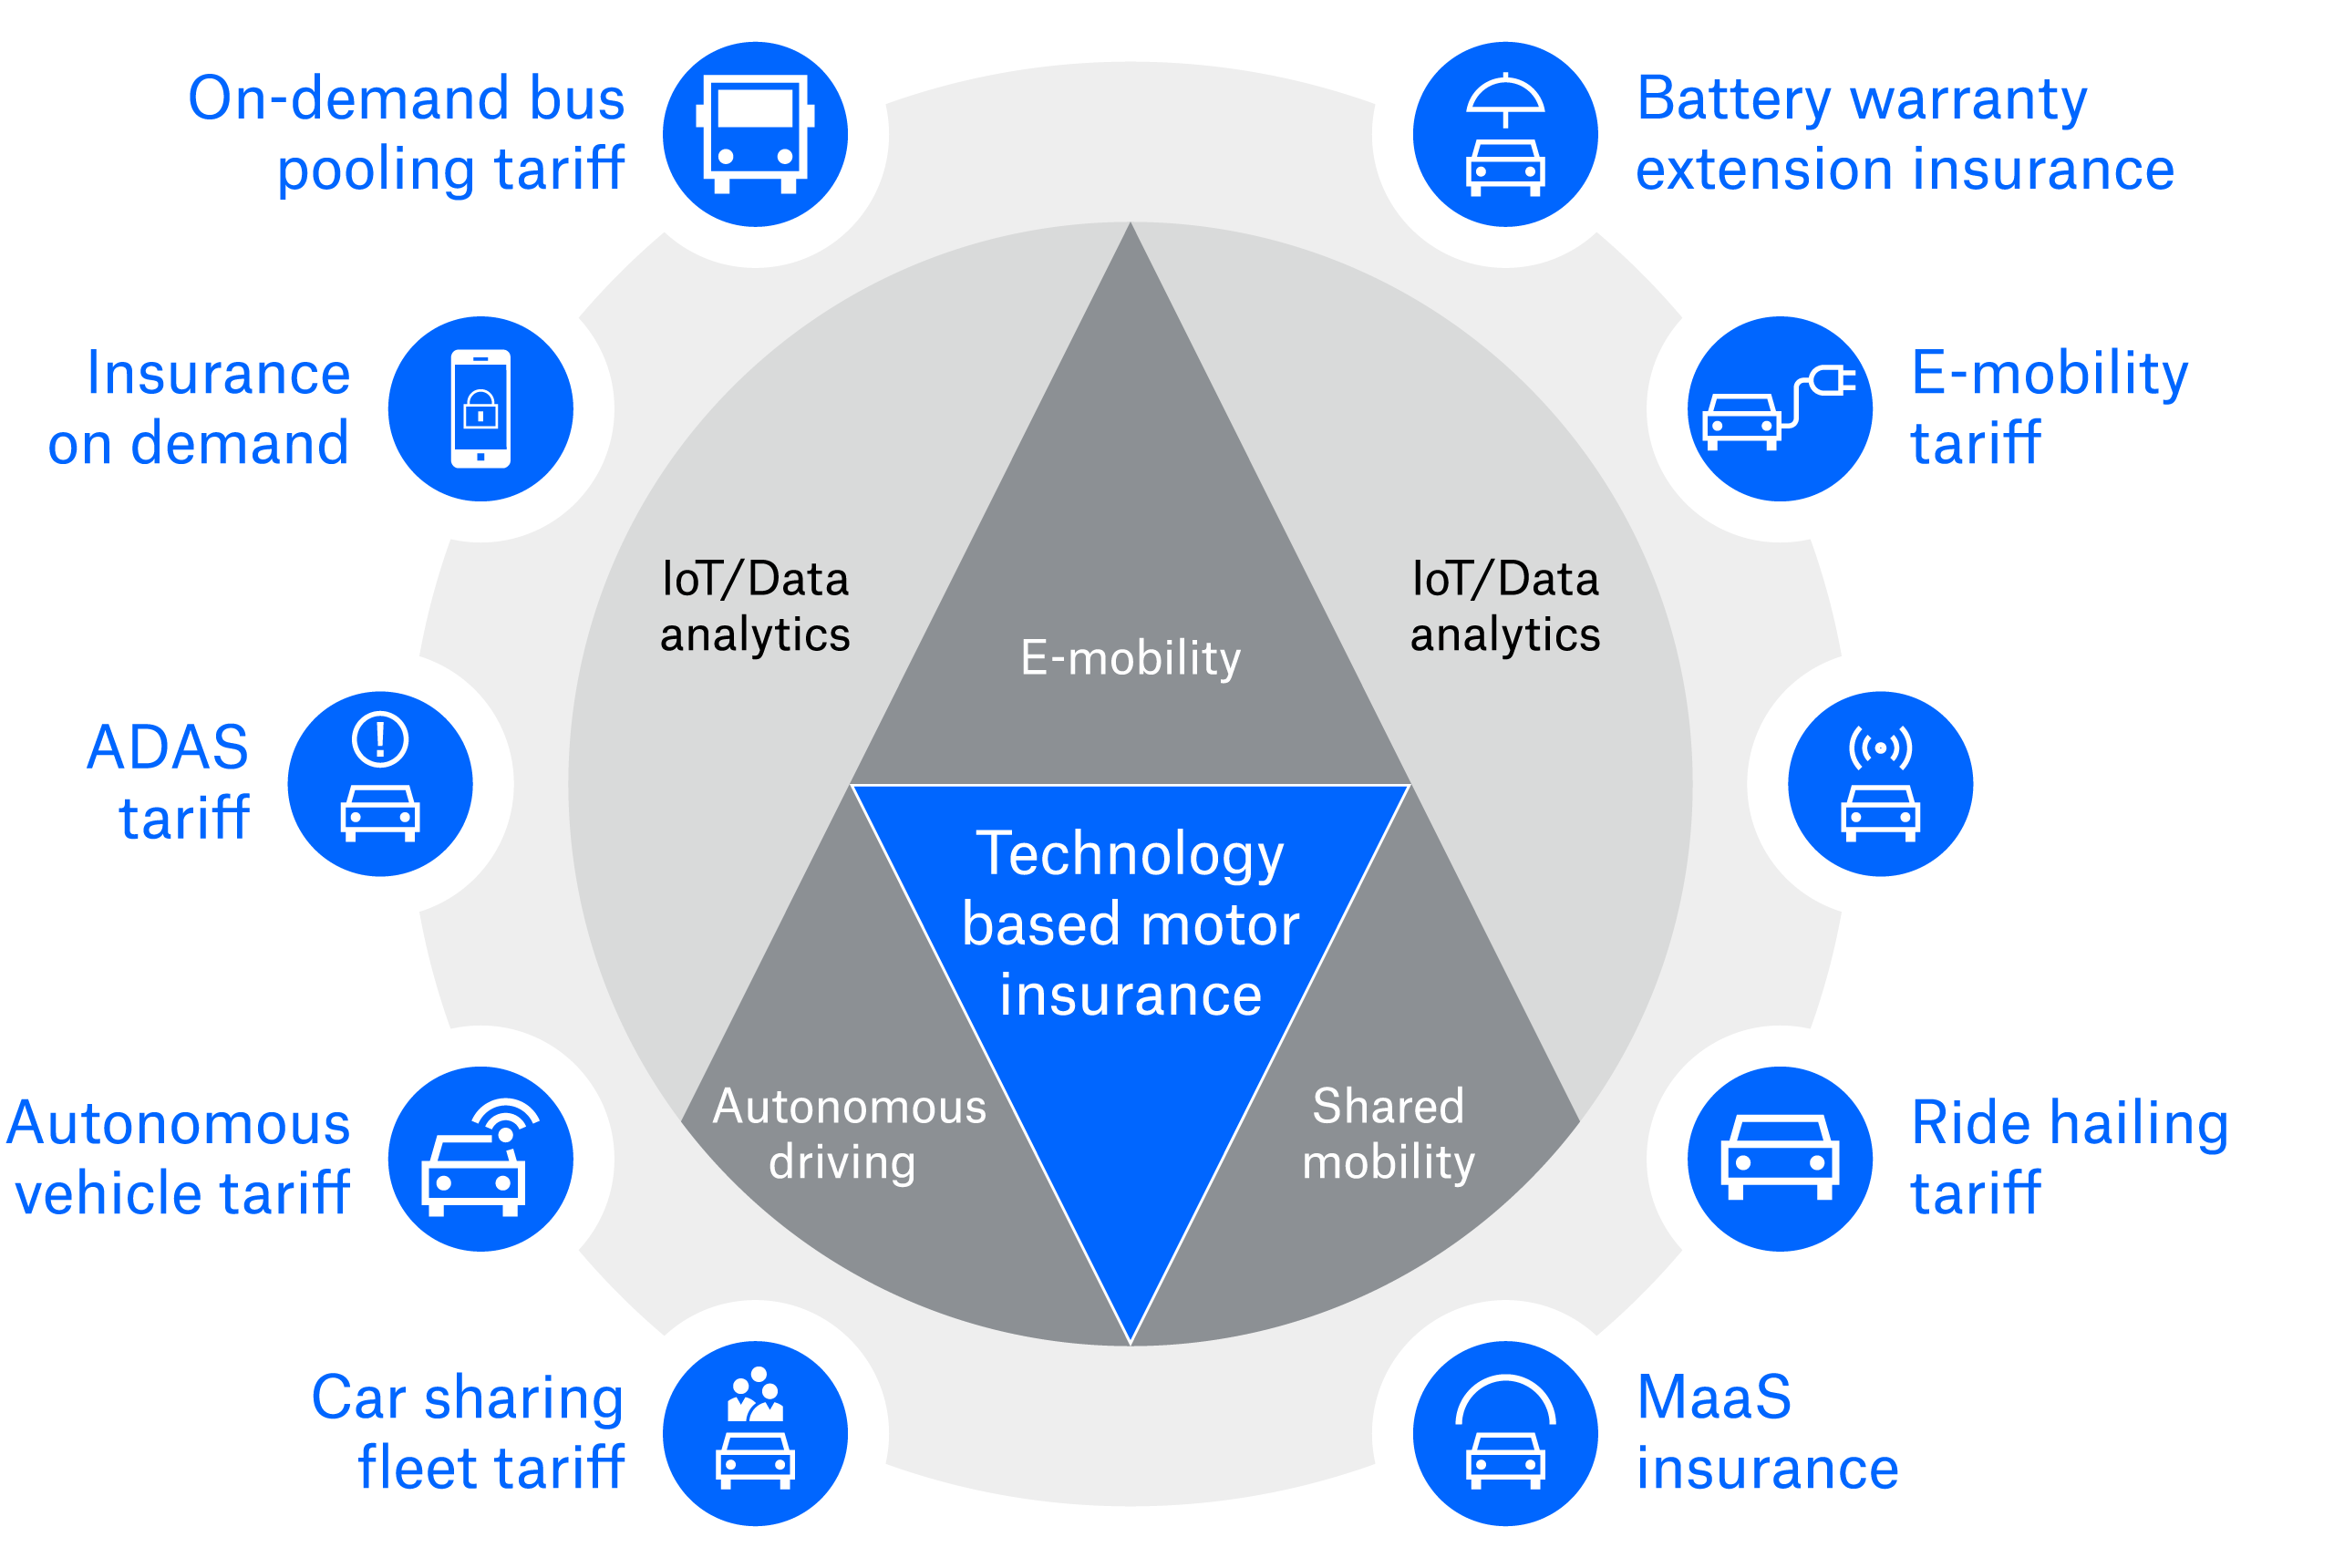 Technology based motor insurance